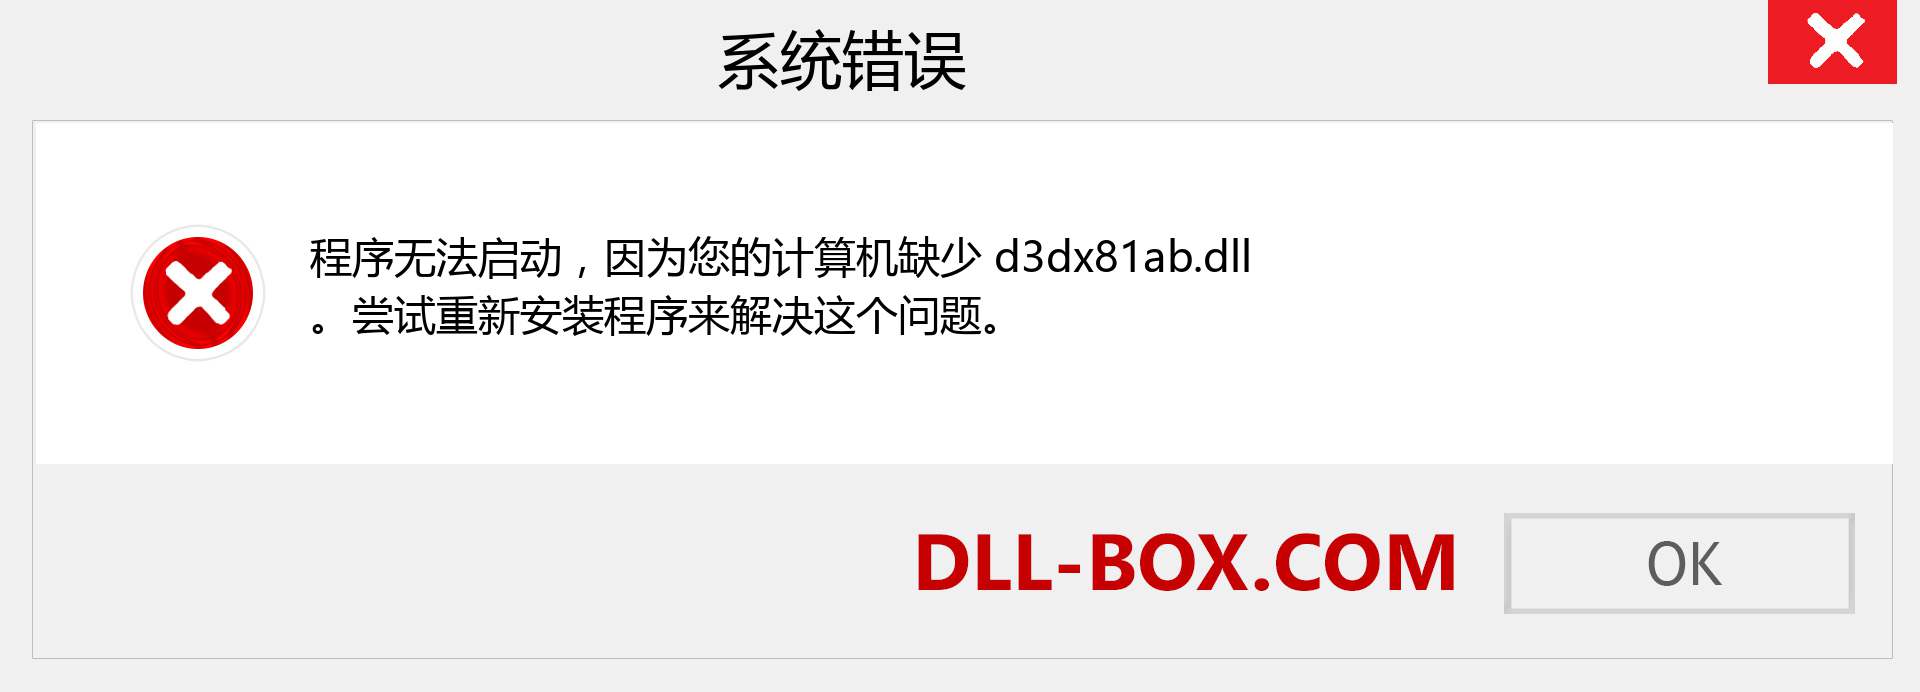 d3dx81ab.dll 文件丢失？。 适用于 Windows 7、8、10 的下载 - 修复 Windows、照片、图像上的 d3dx81ab dll 丢失错误